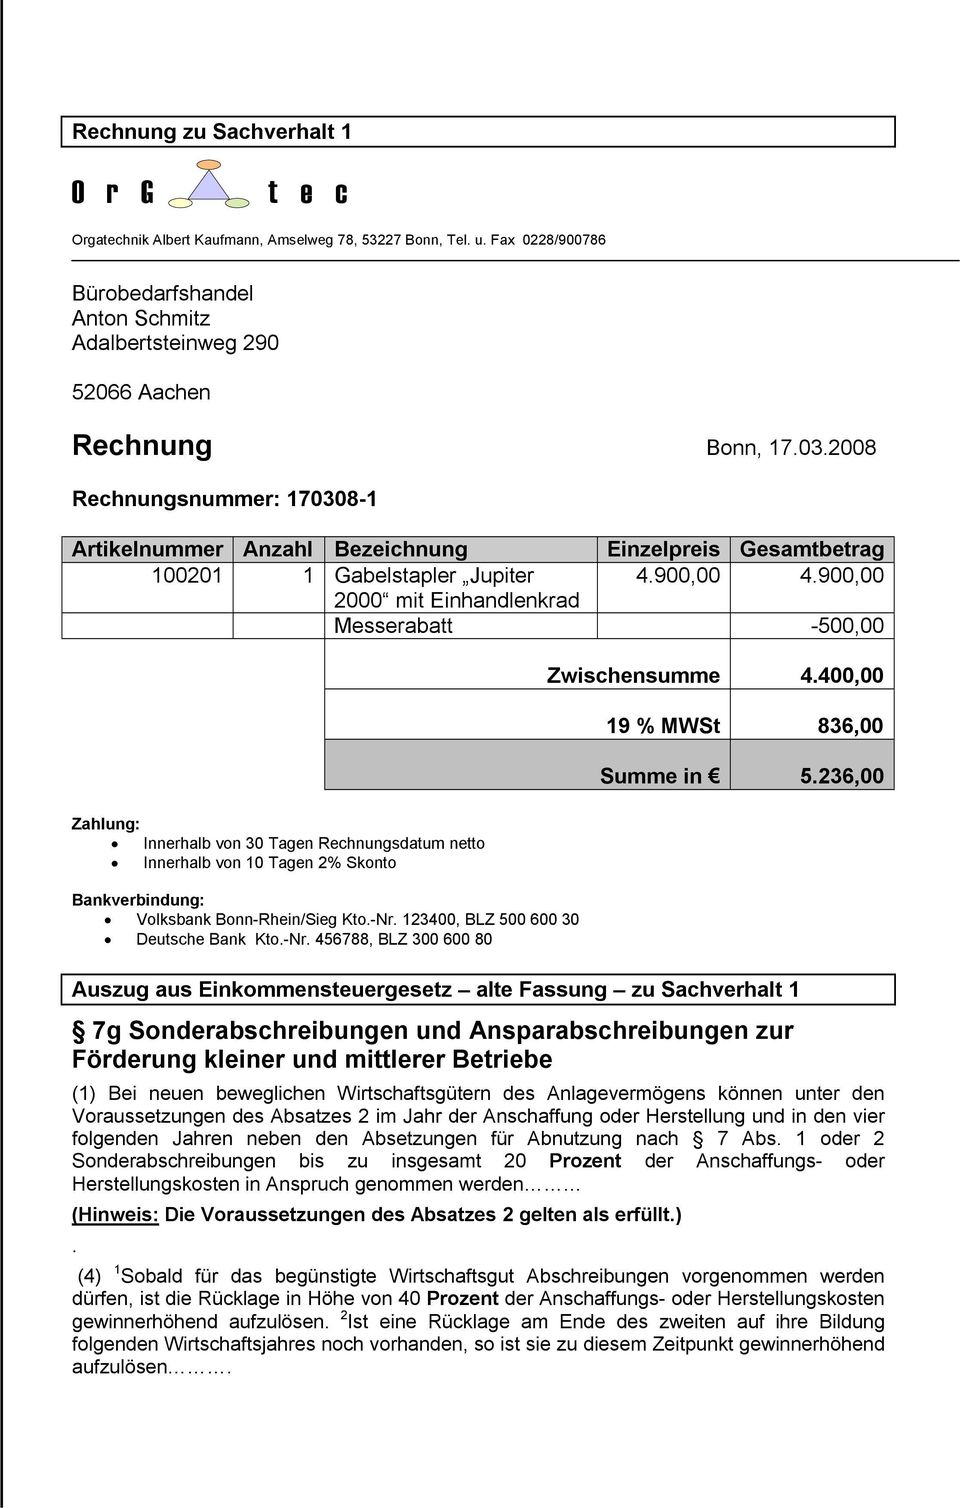 900,00 2000 mit Einhandlenkrad Messerabatt -500,00 Zahlung: Innerhalb von 30 Tagen Rechnungsdatum netto Innerhalb von 10 Tagen 2% Skonto Bankverbindung: Volksbank Bonn-Rhein/Sieg Kto.-Nr.